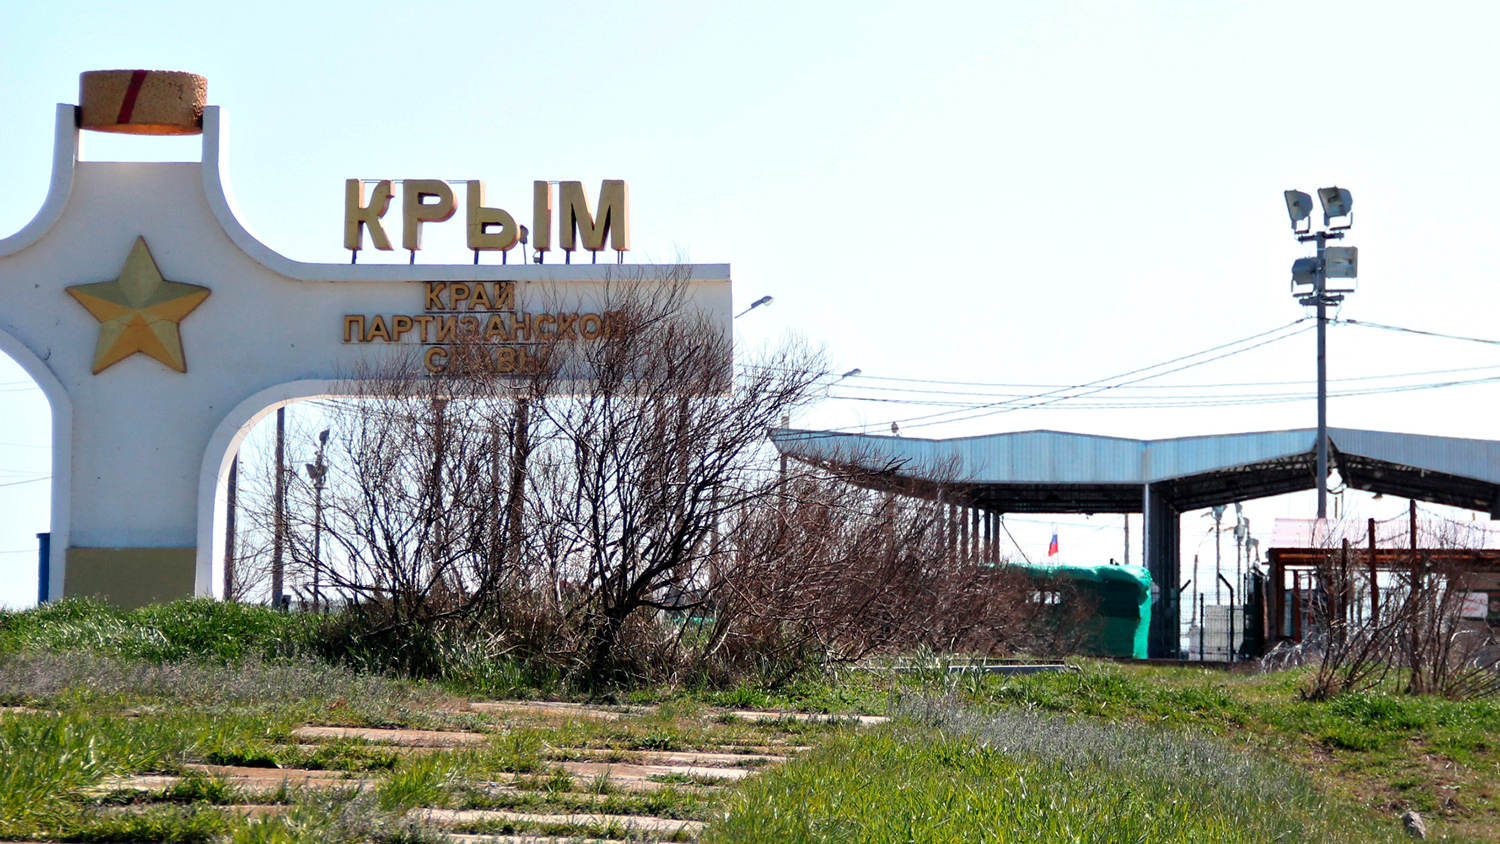 Глава Крымского парламента анонсировал перезагрузку системы власти в регионе